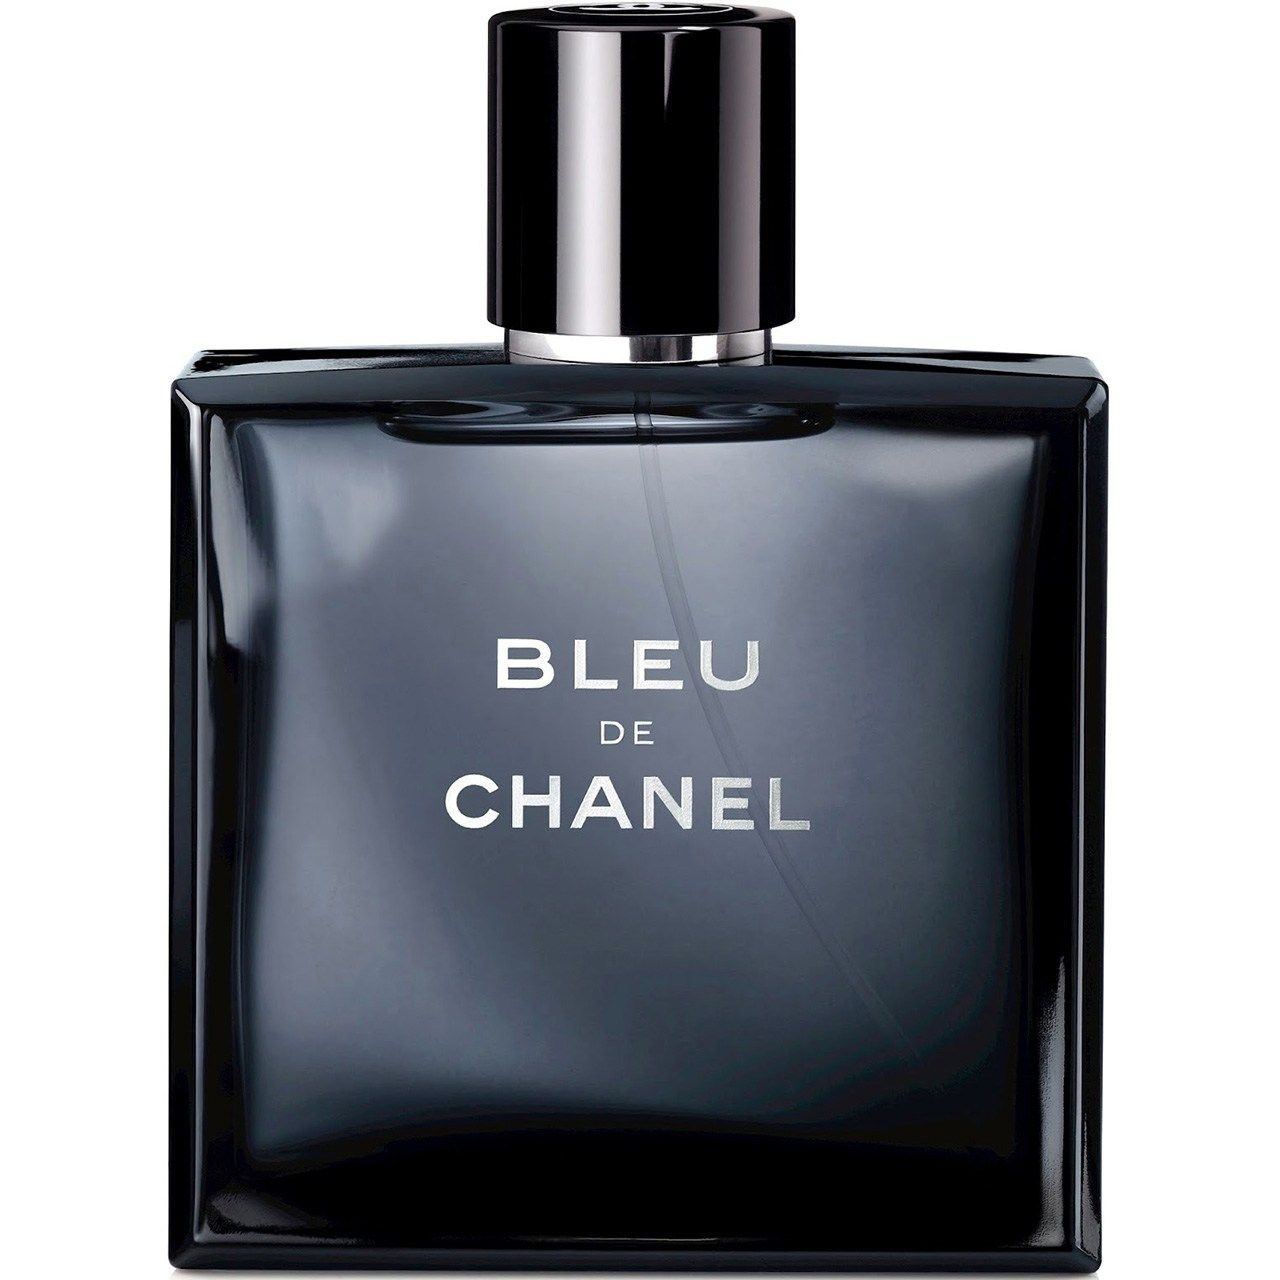 ادو پرفیوم مردانه شانل مدل Bleu de Chanel Eau de Parfum حجم 100 میلی لیتر  -  - 1